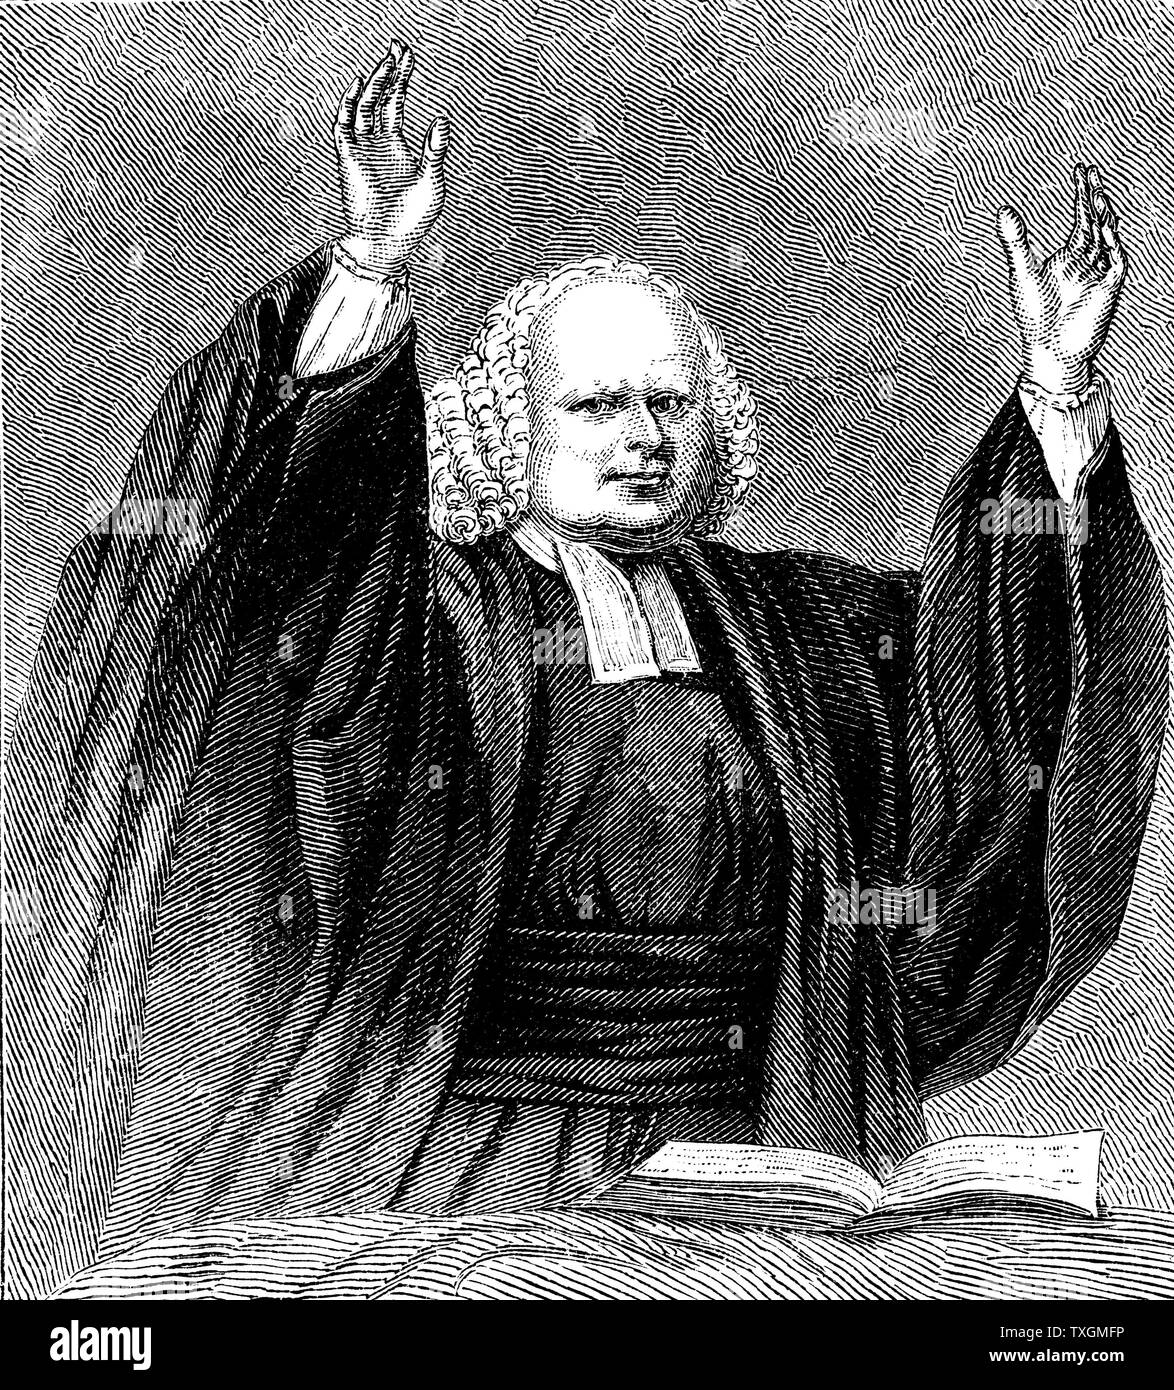 George Whitefield (1714-1770) English évangéliste et fondateur du méthodisme, prêchant la gravure sur bois, c.1850 Banque D'Images